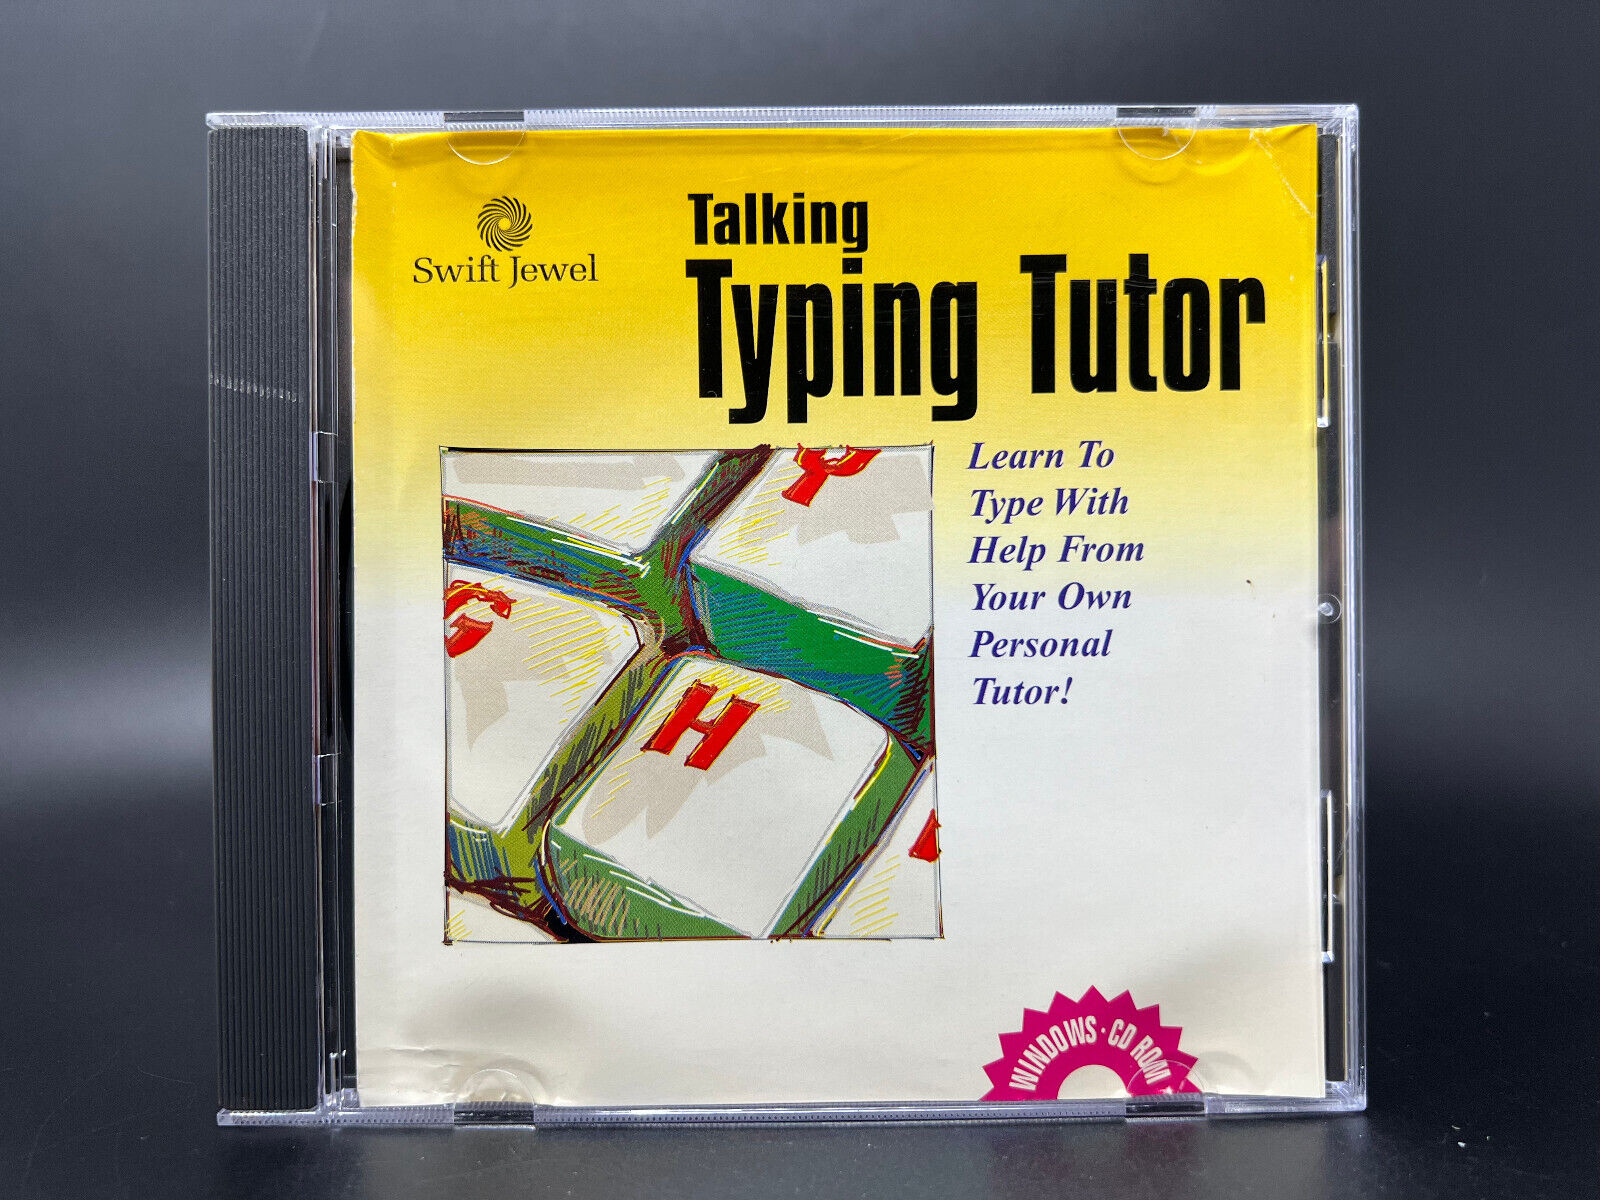 Swift Jewel Talking Typing Tutor (PC, 1998) *DISC, CASE & ARTWORK - READ*